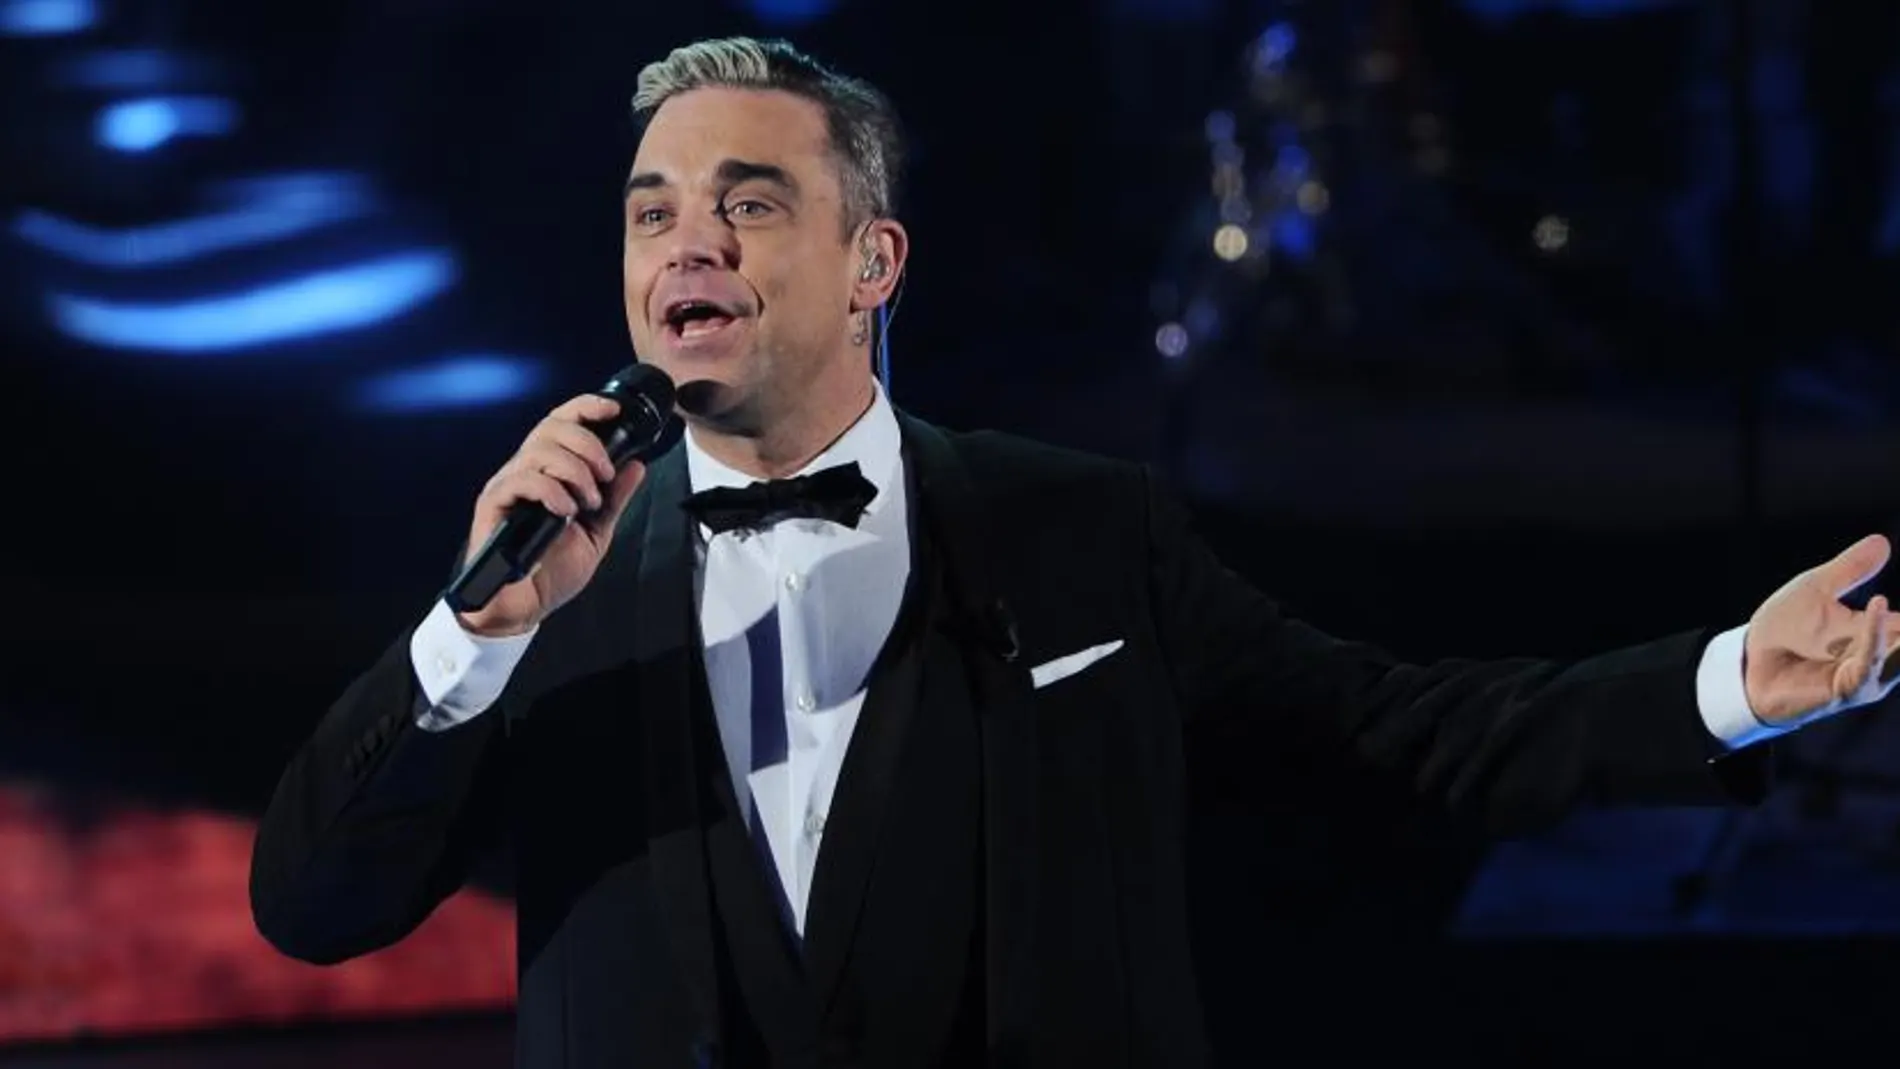 El cantante británico Robbie Williams duraqnte un programa de televisión italiano.